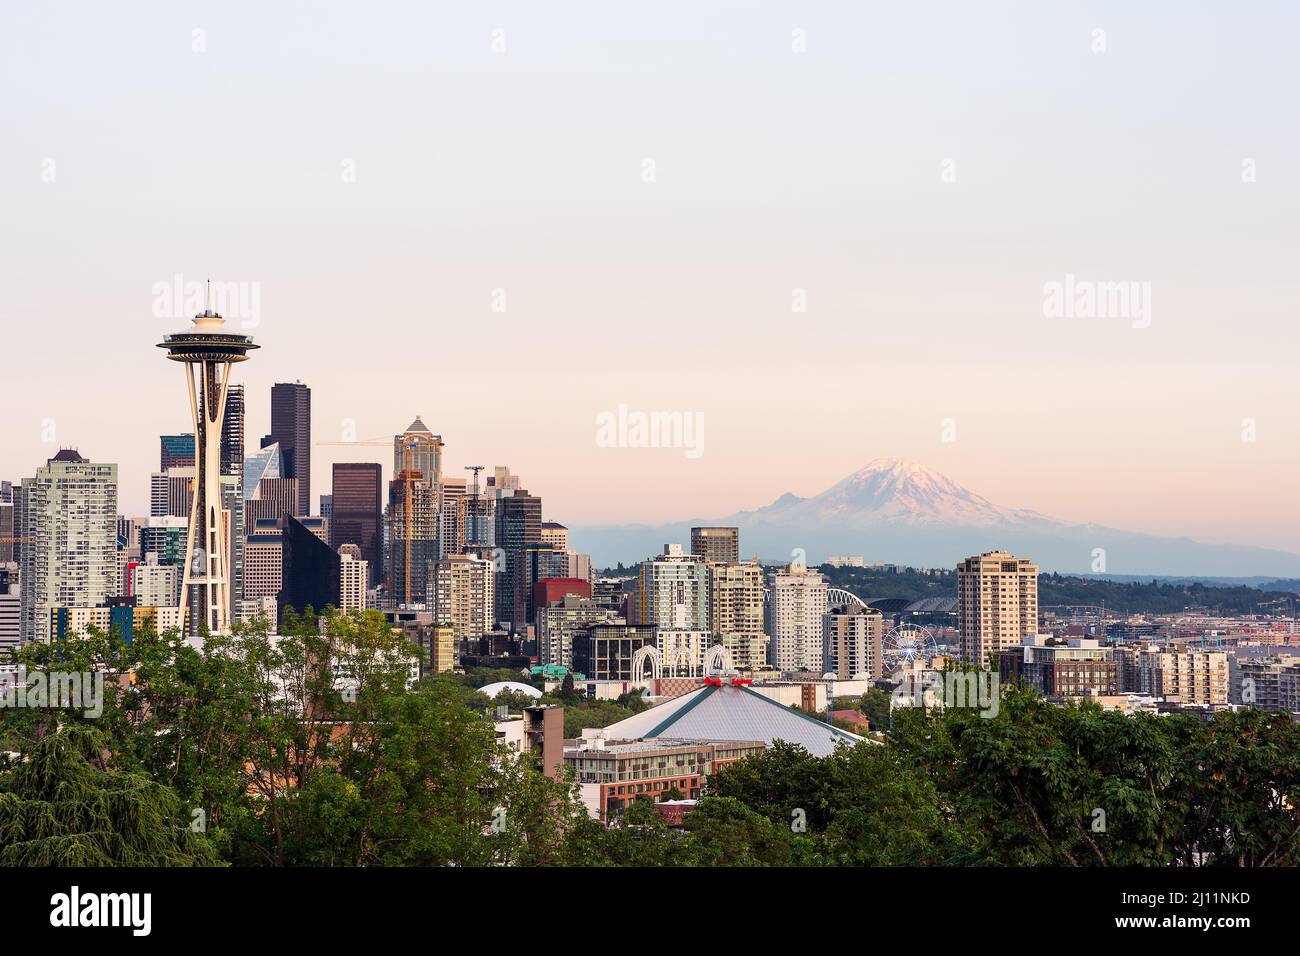 Les gratte-ciel de Seattle avec Mt. Rainier au crépuscule Banque D'Images